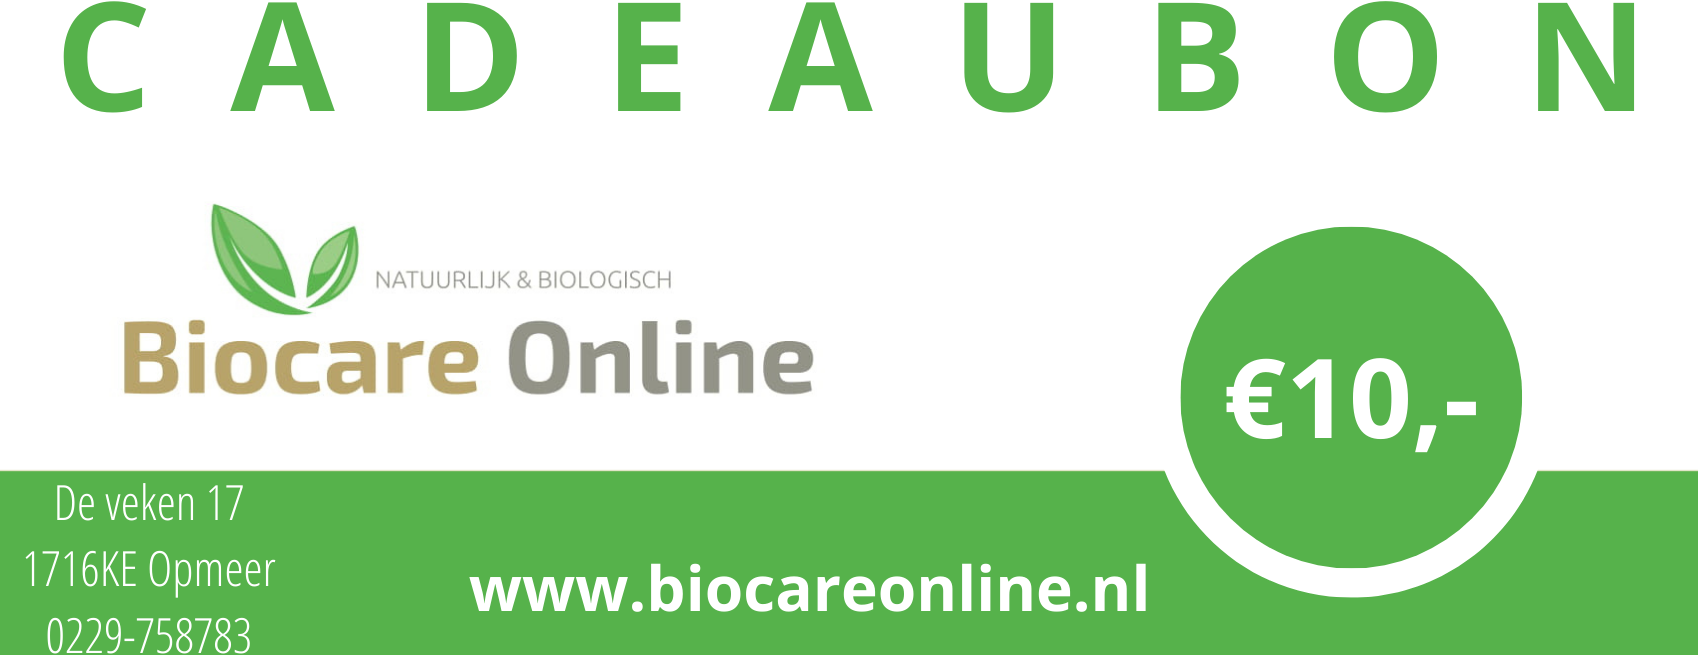 Pessimist Rechtmatig spleet Cadeaubon Biocare Online